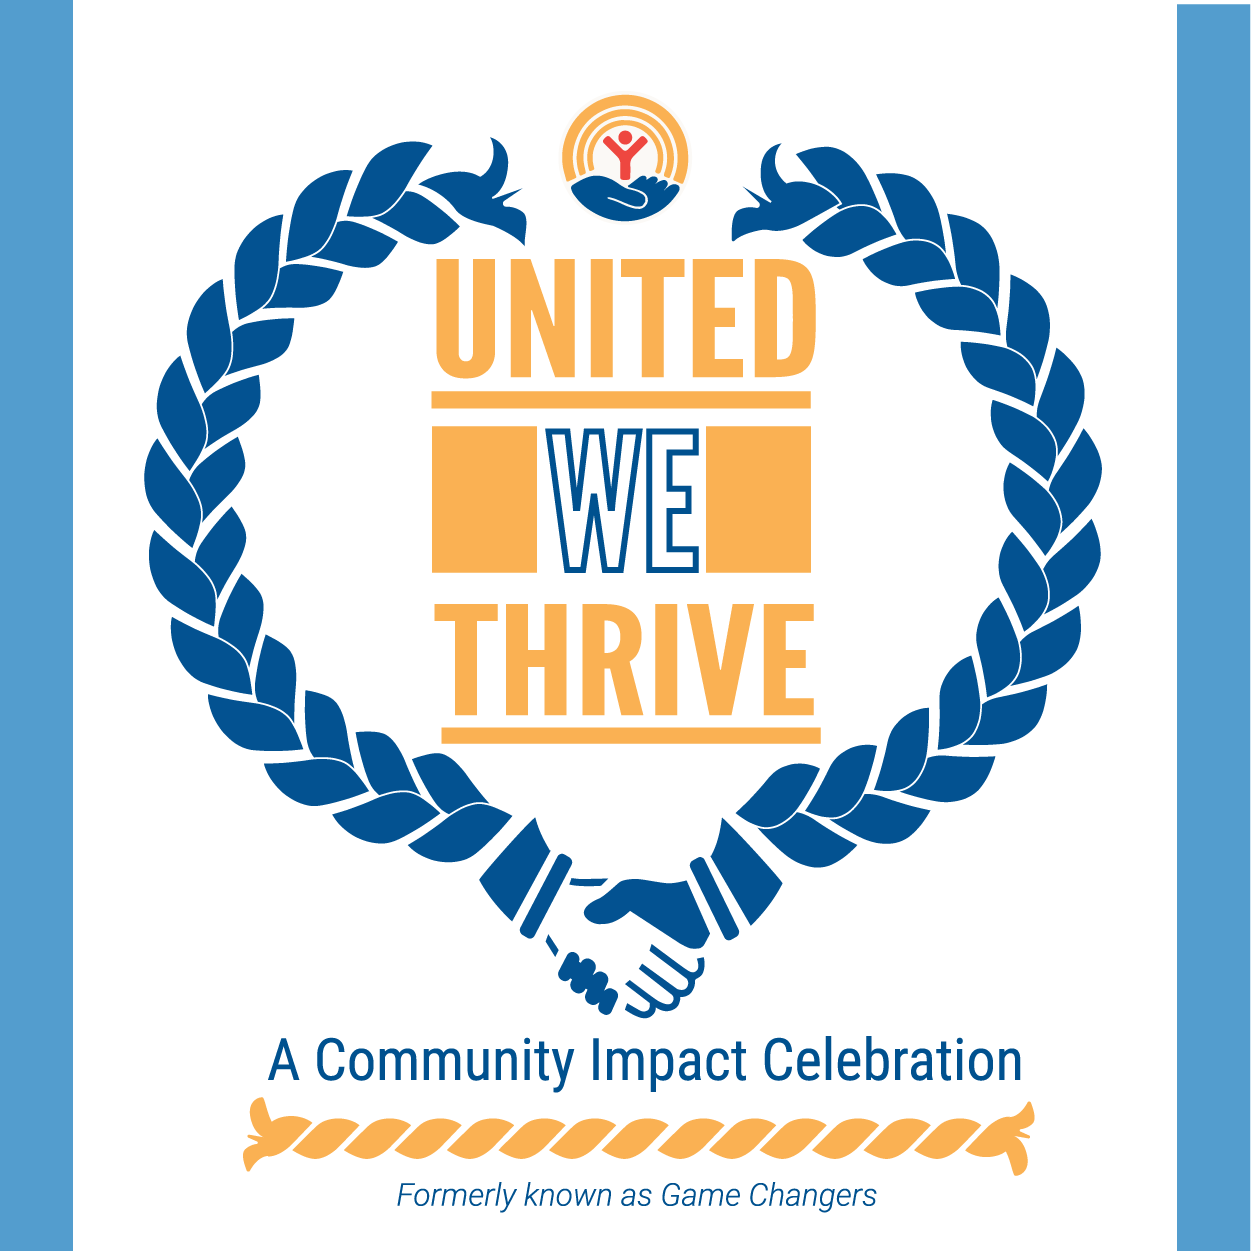 United We Thrive: A Community Impact Celebration